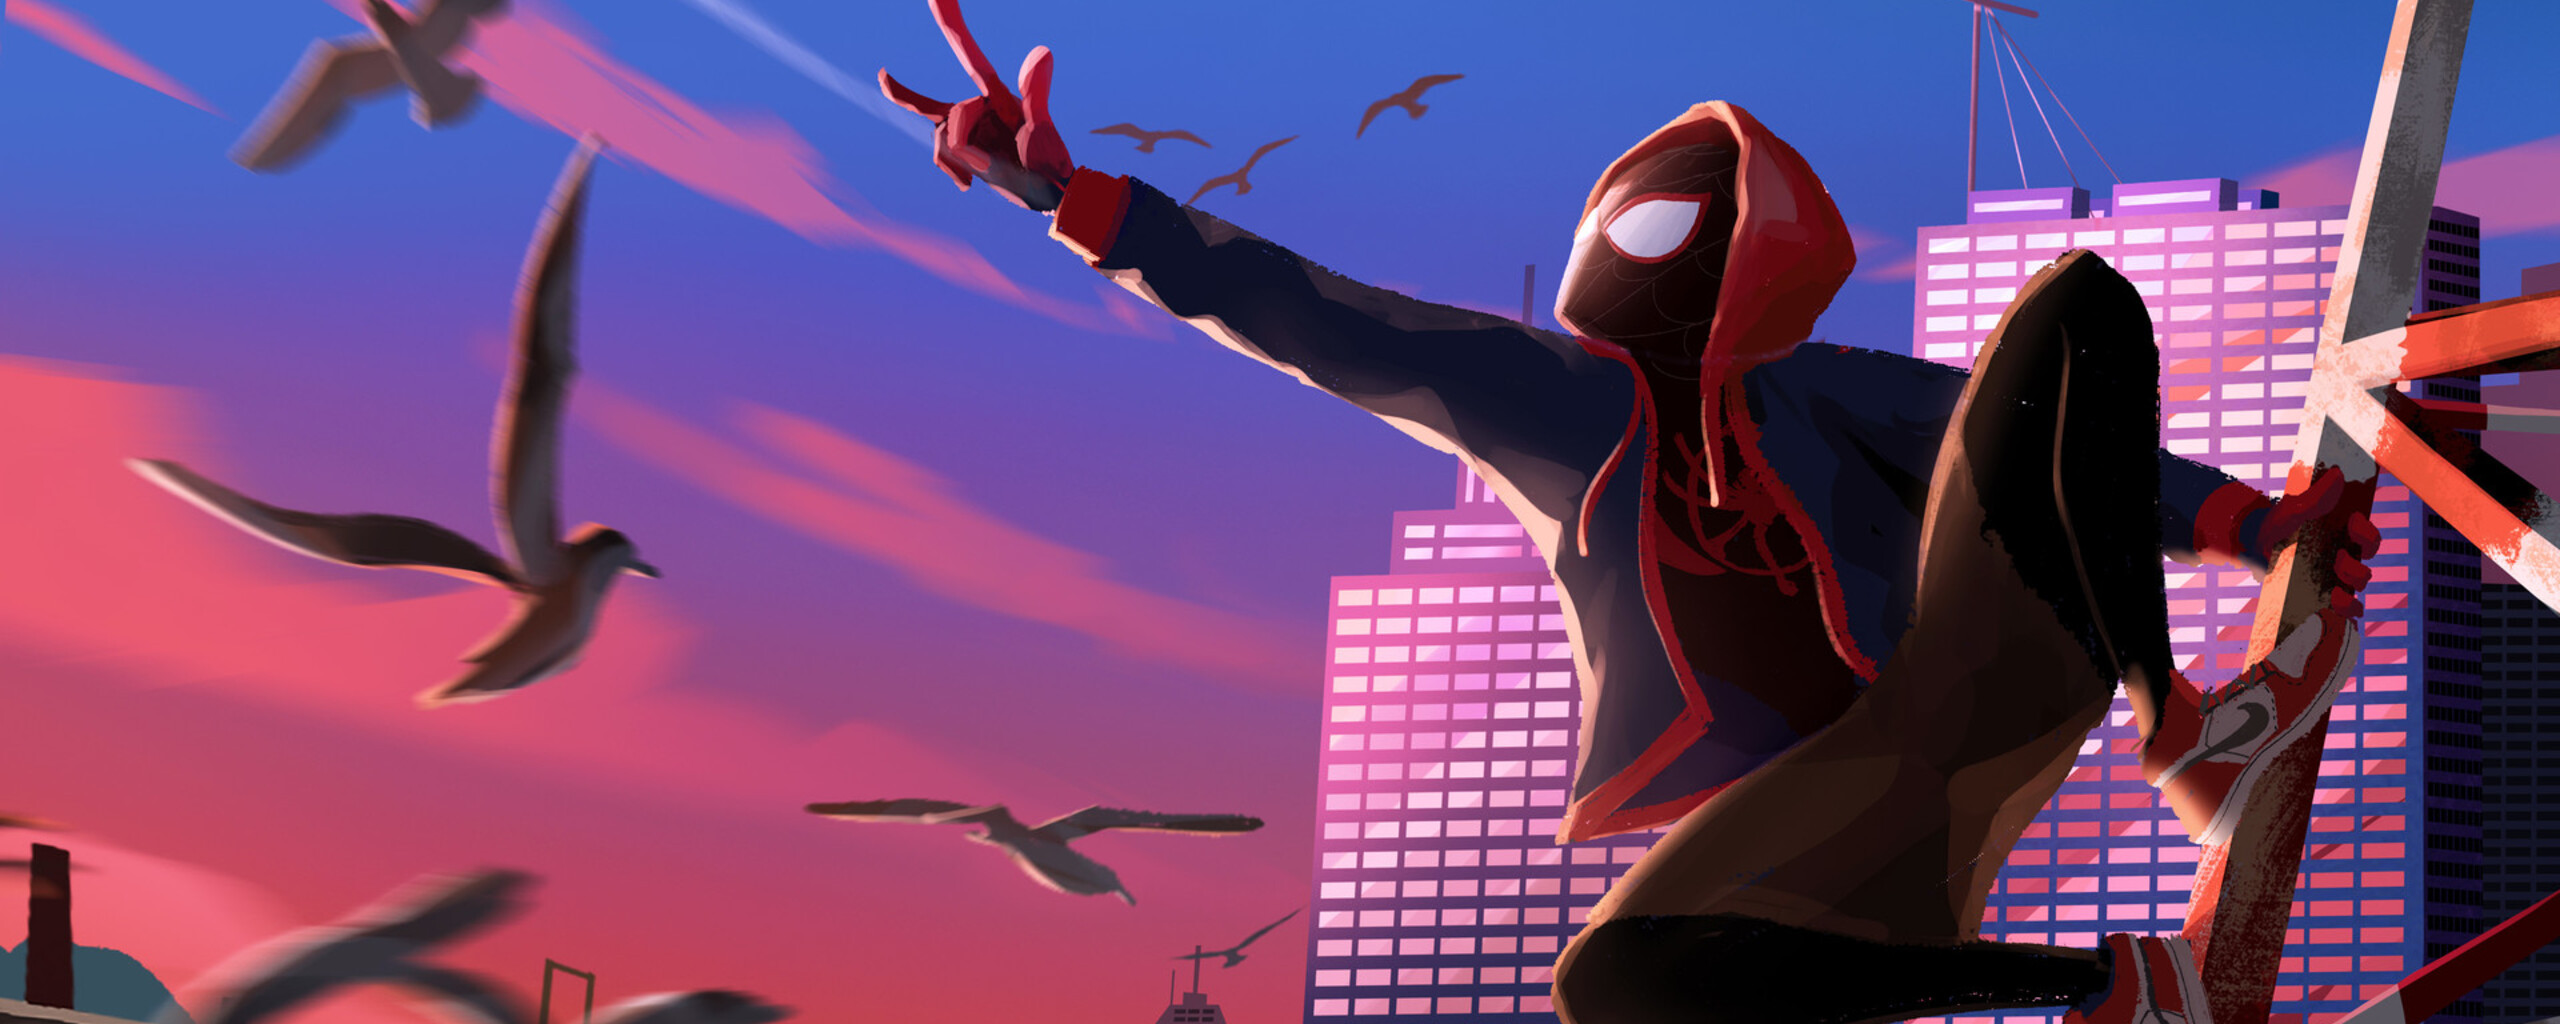 Spider Man Into The Spider Verse Art In 2560x1024 Resolution. spide...